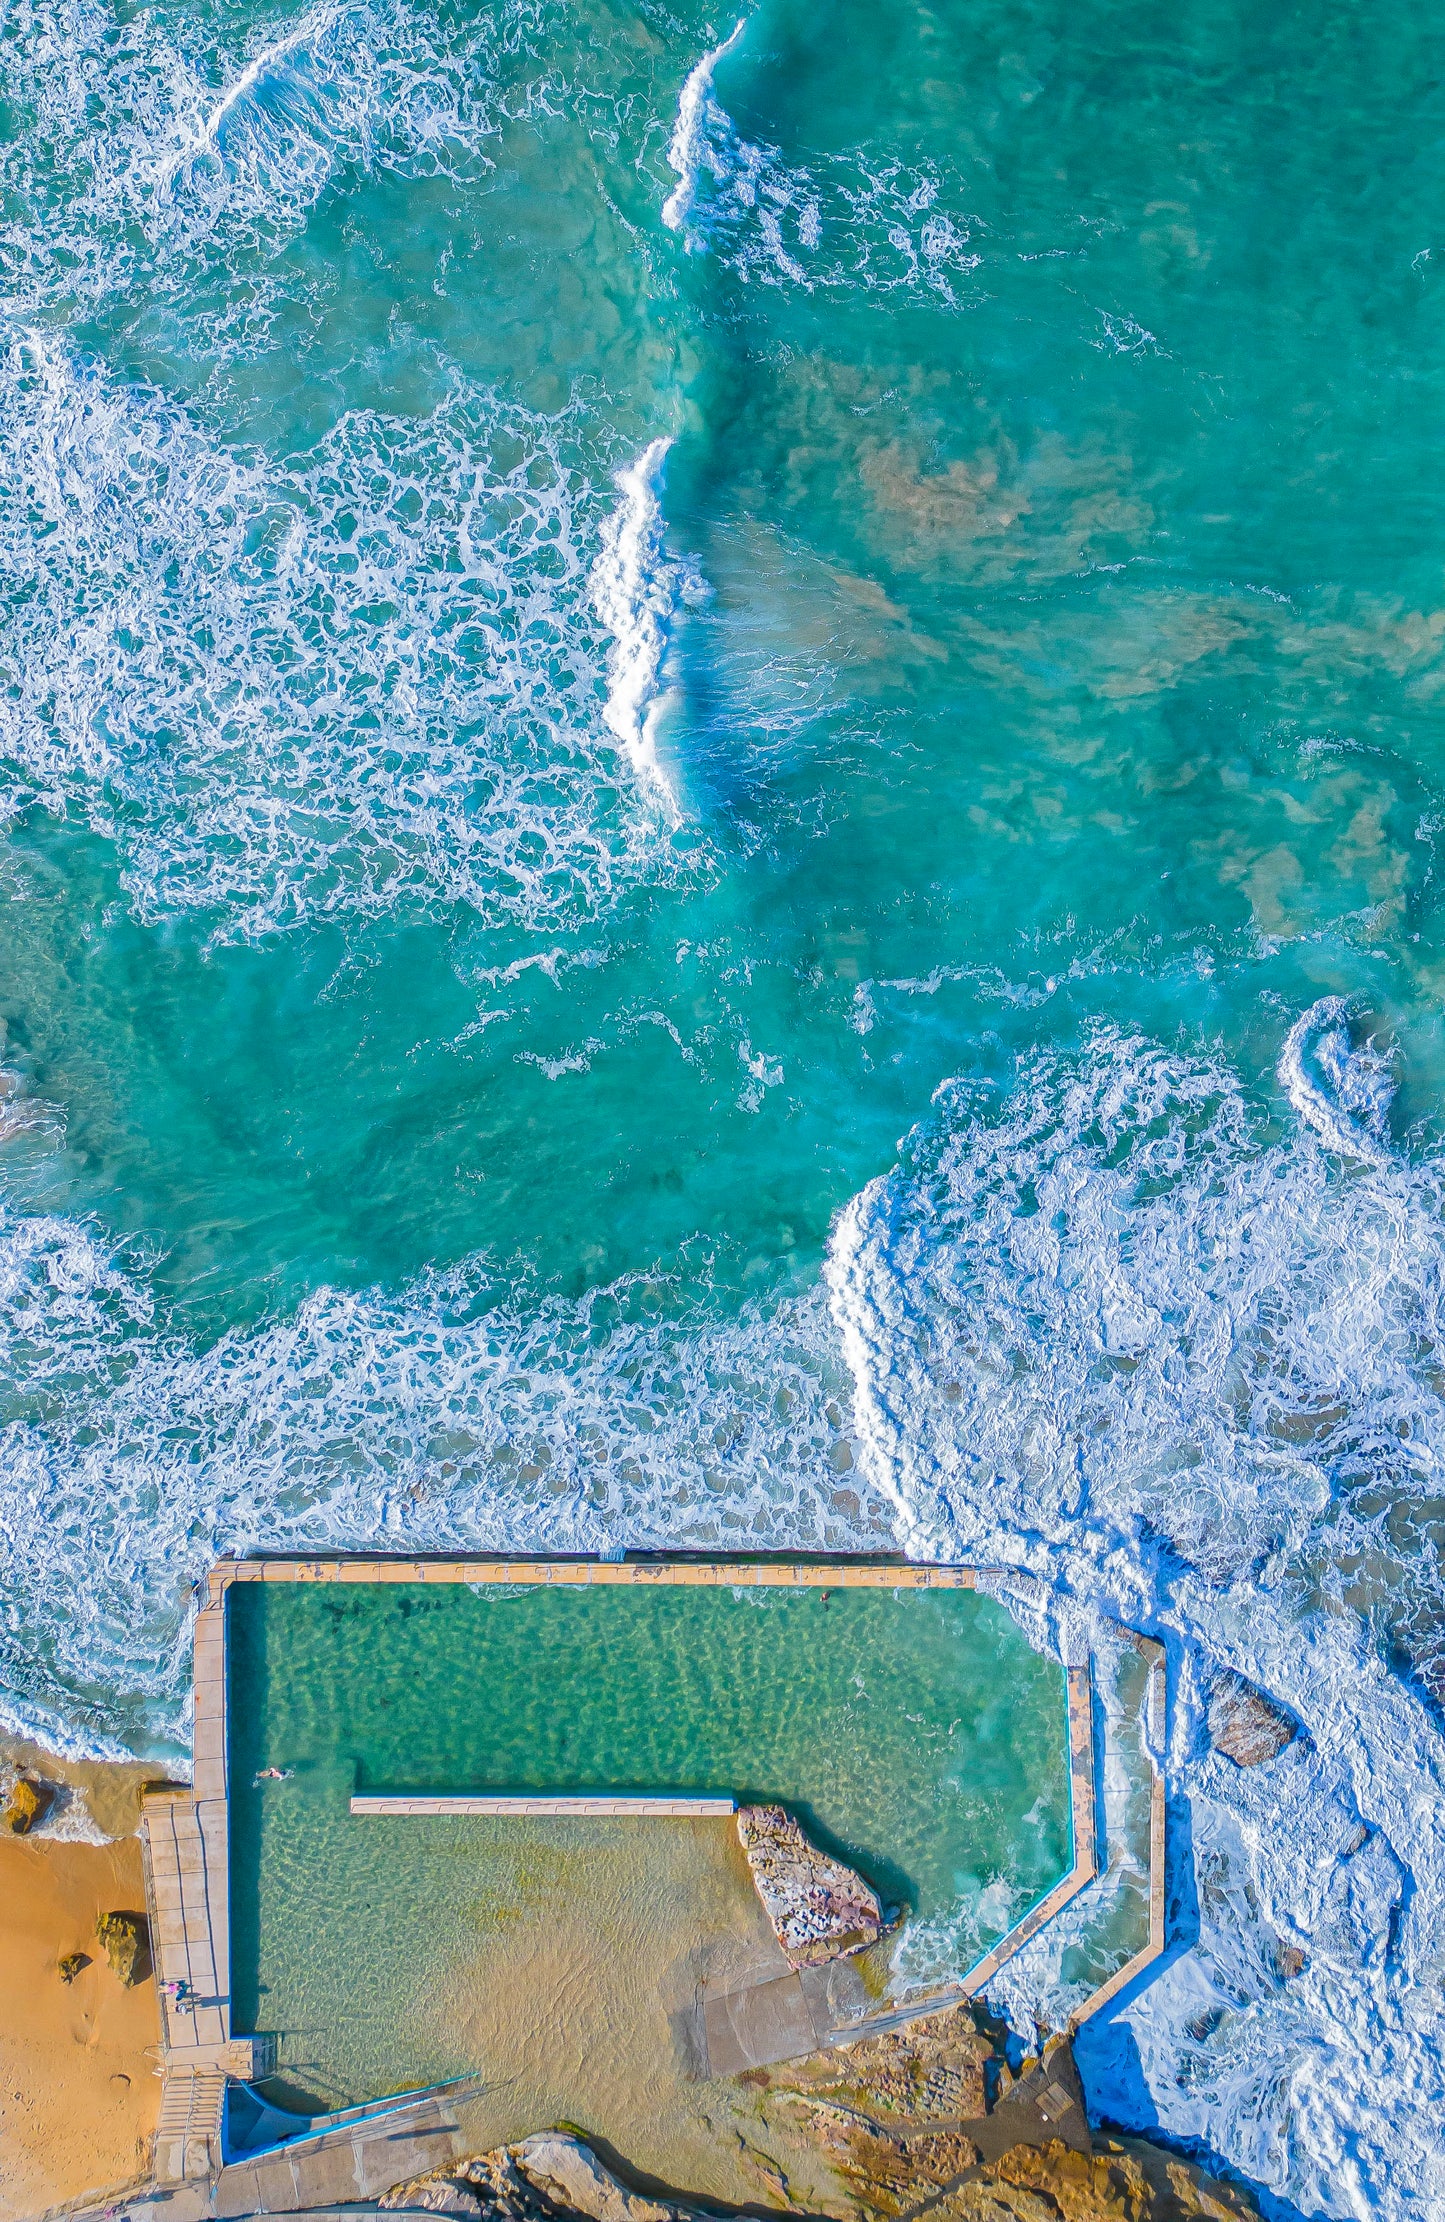 South Curl Curl  Rock Pool Aerial View - Sydney Coastal Wall Art